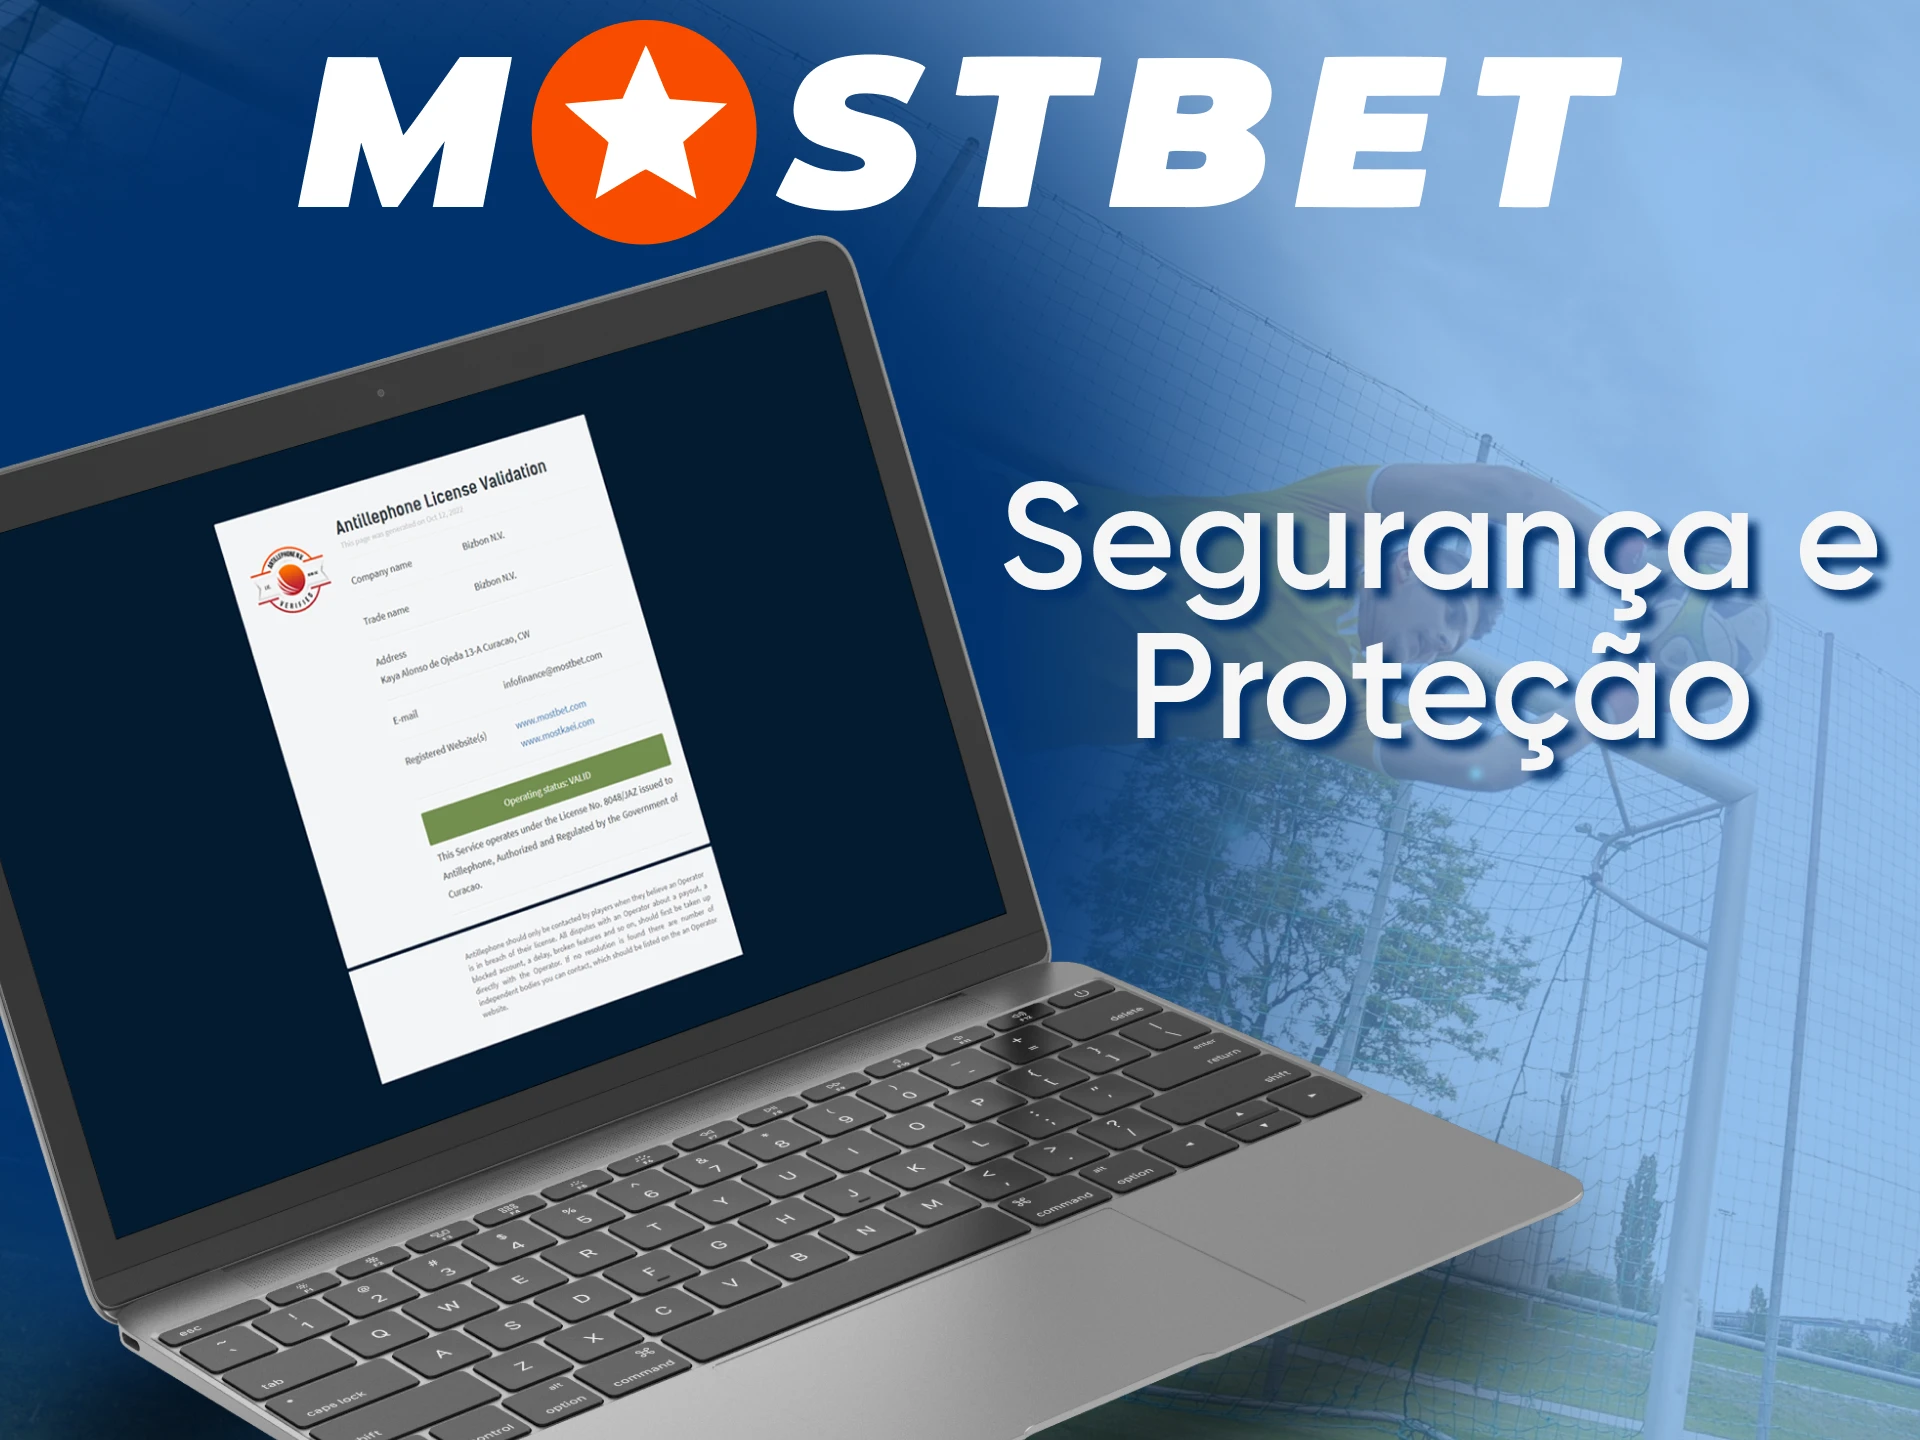 O site oficial da Mostbet é totalmente legal e seguro de usar.